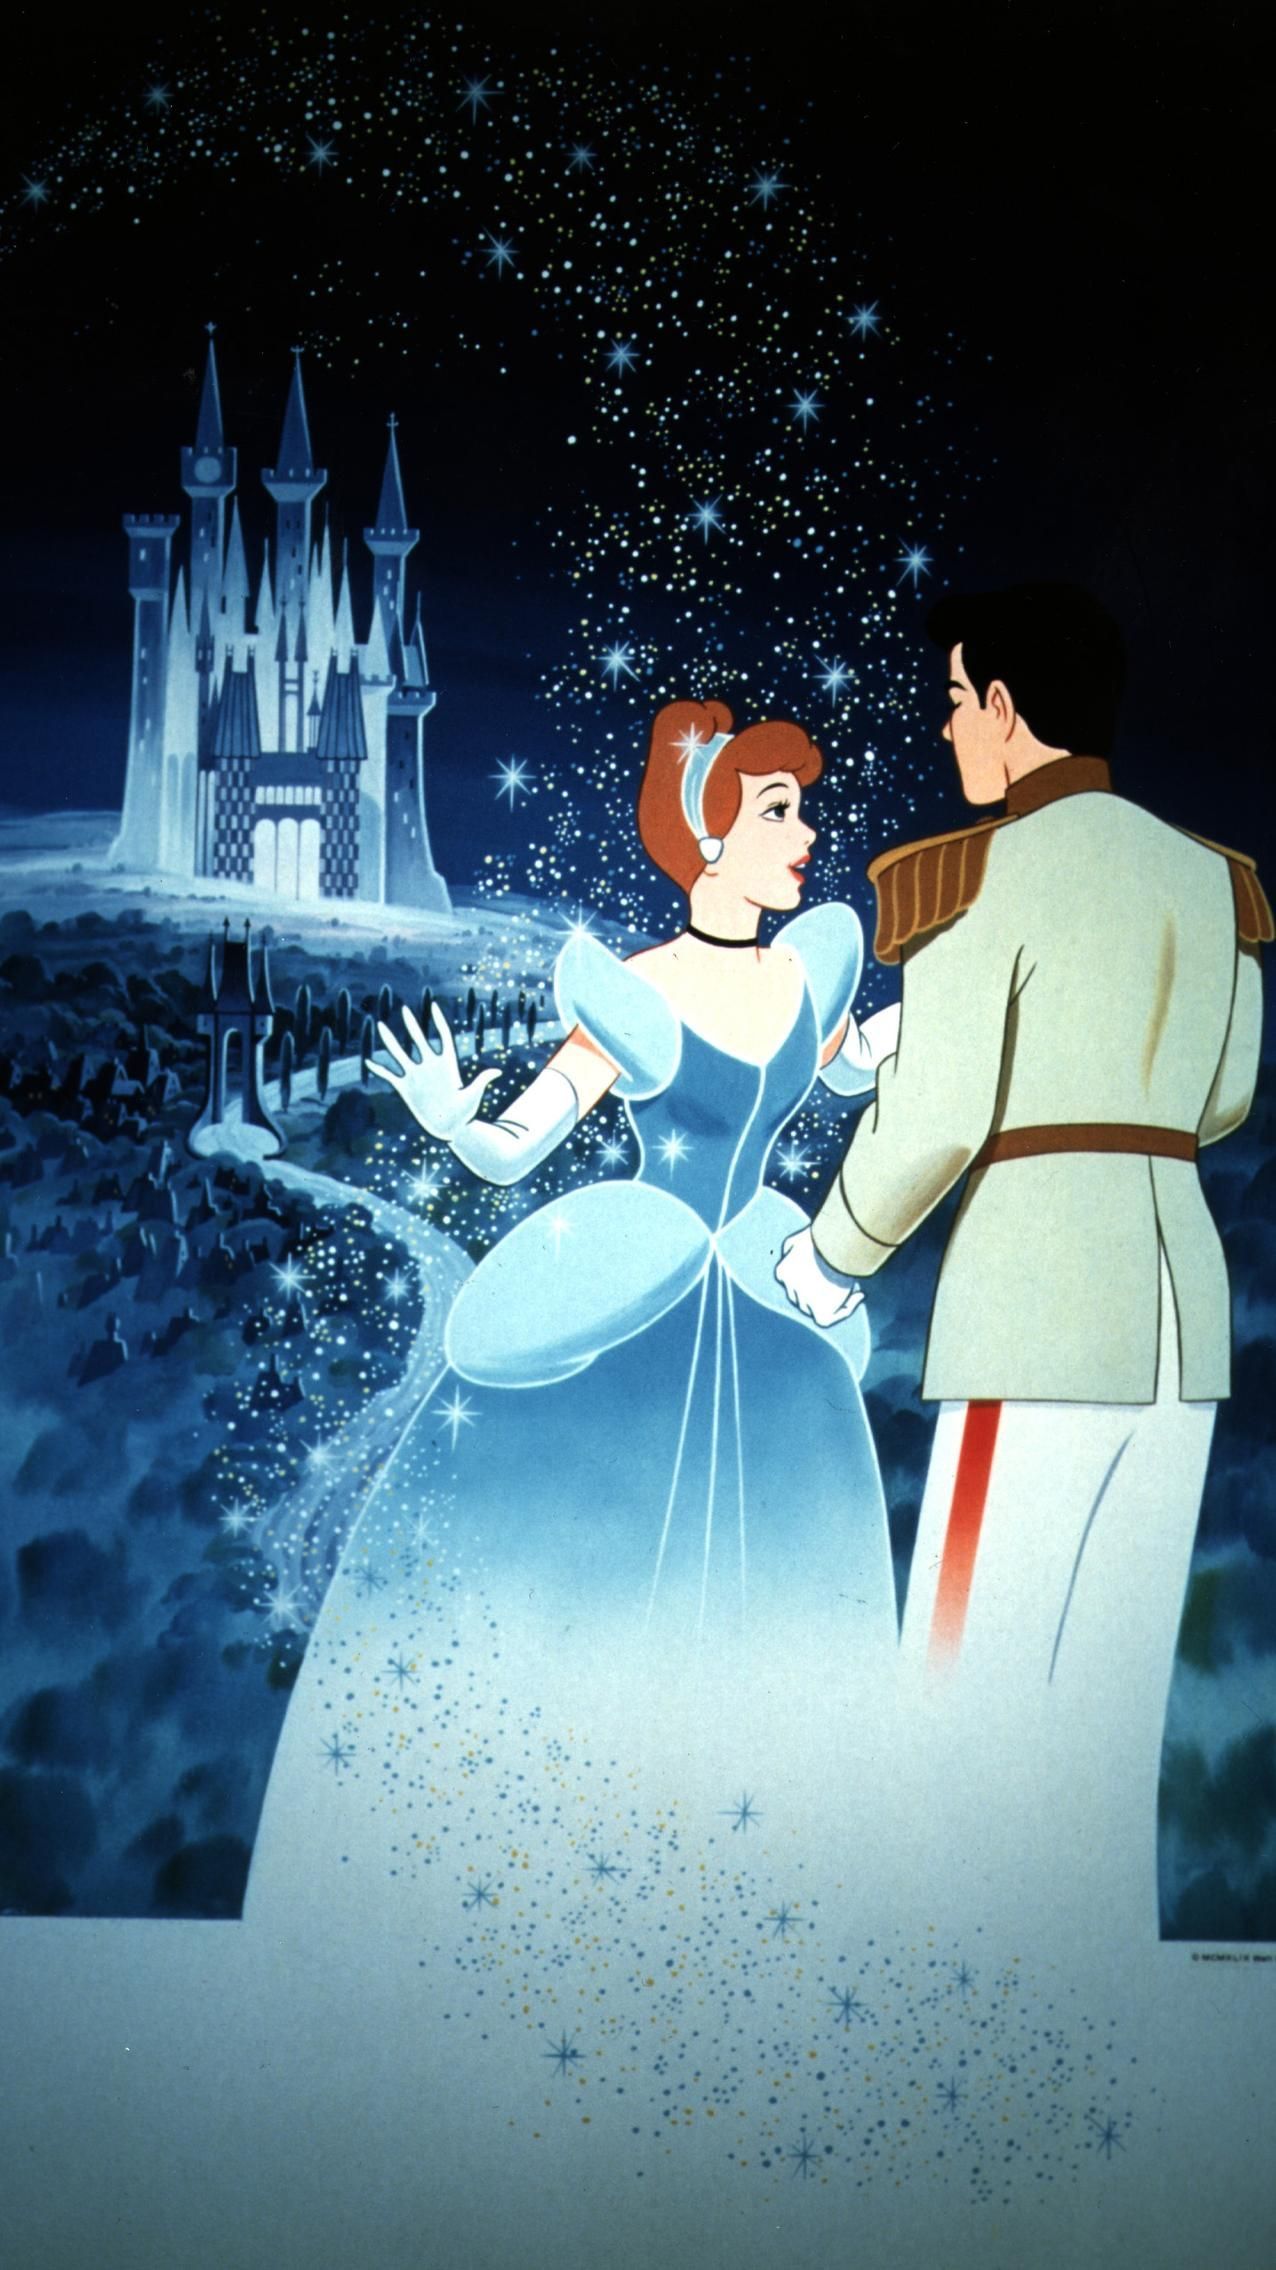 Cinderella wallpaper, Disney princess .com